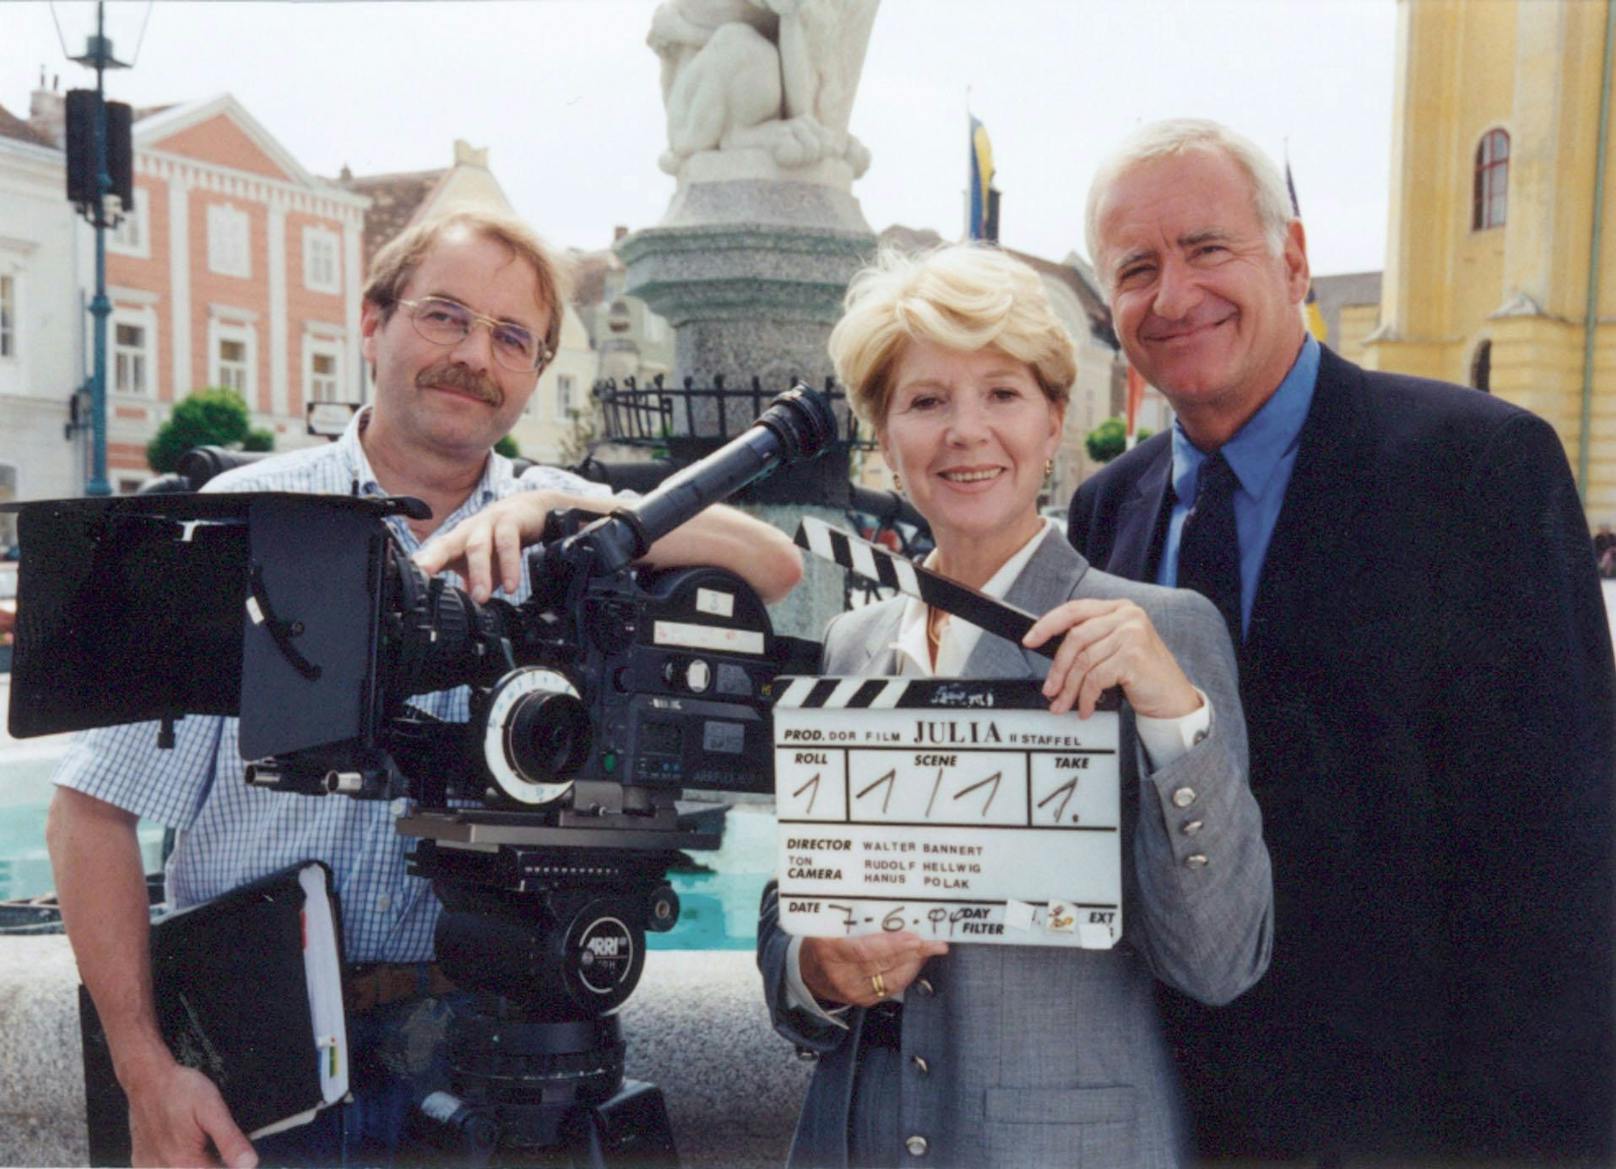 Die Schauspielerin bei den Dreharbeiten zu "Julia -  Eine ungewöhnliche Frau" mit Regisseur Walter Bannert und Kollege Peter Bongartz.